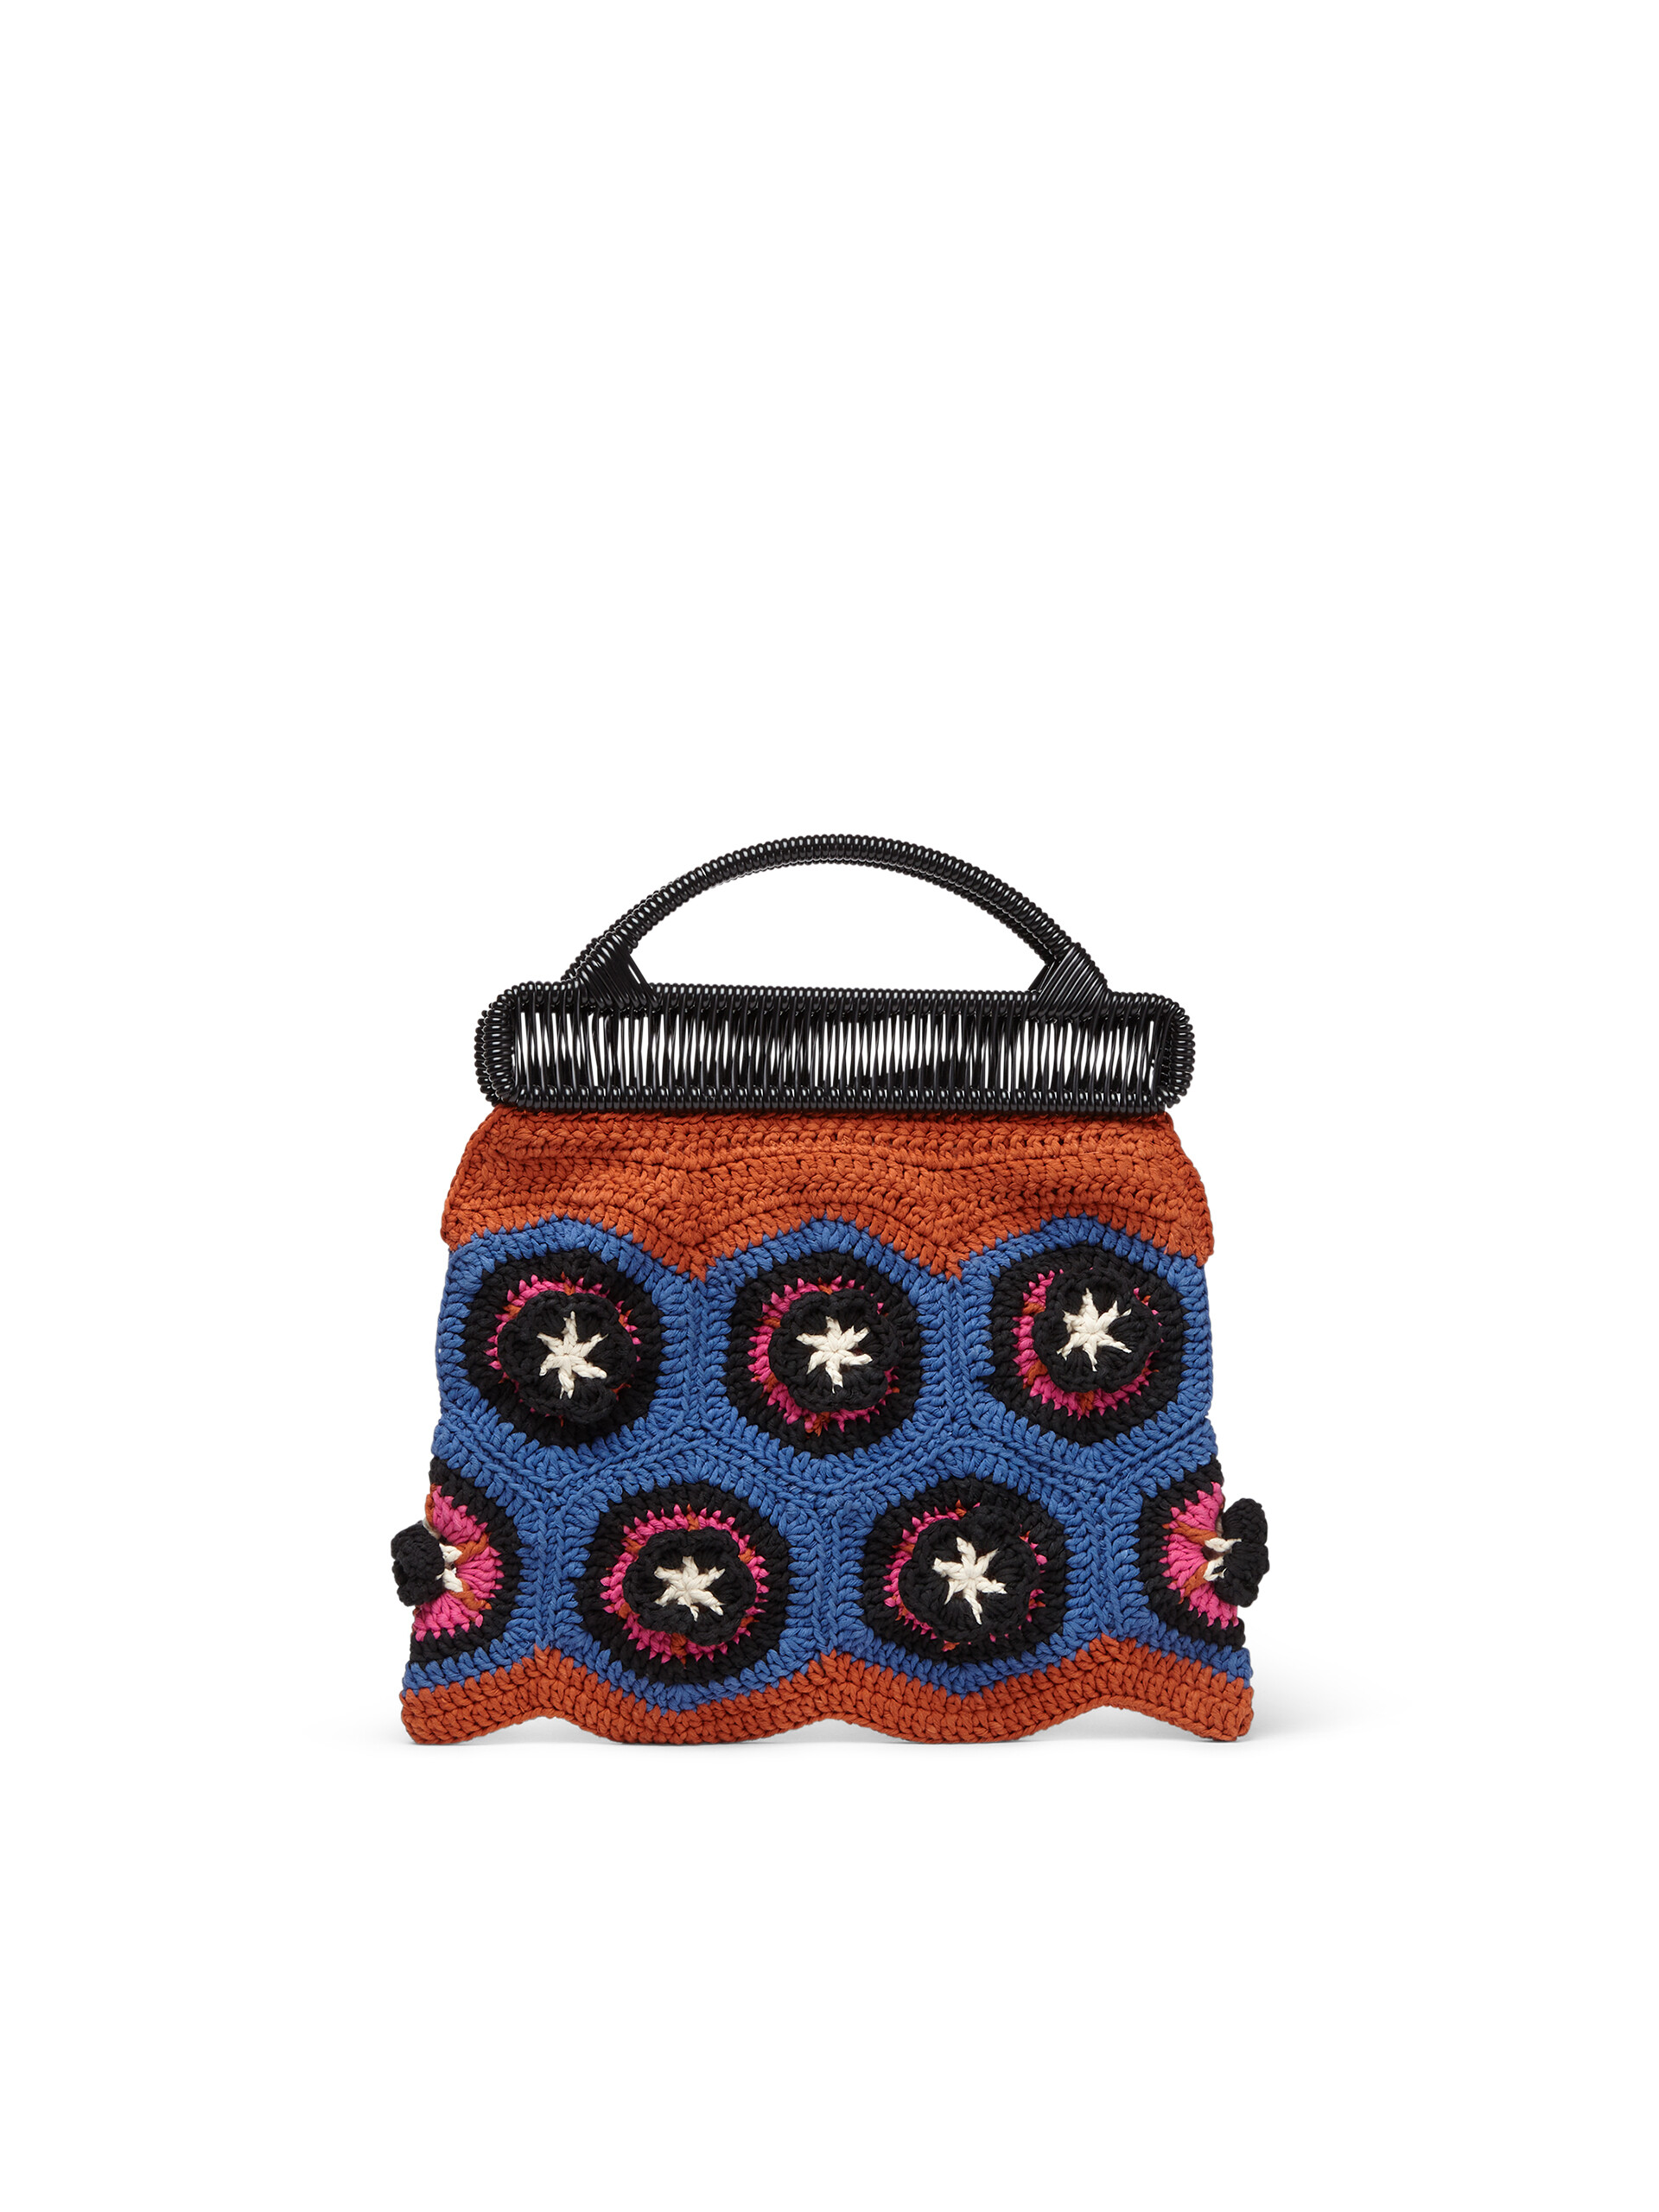 MARNI MARKET frame bag with floral motif in orange and pale blue crochet cotton blend - Furniture - Image 3